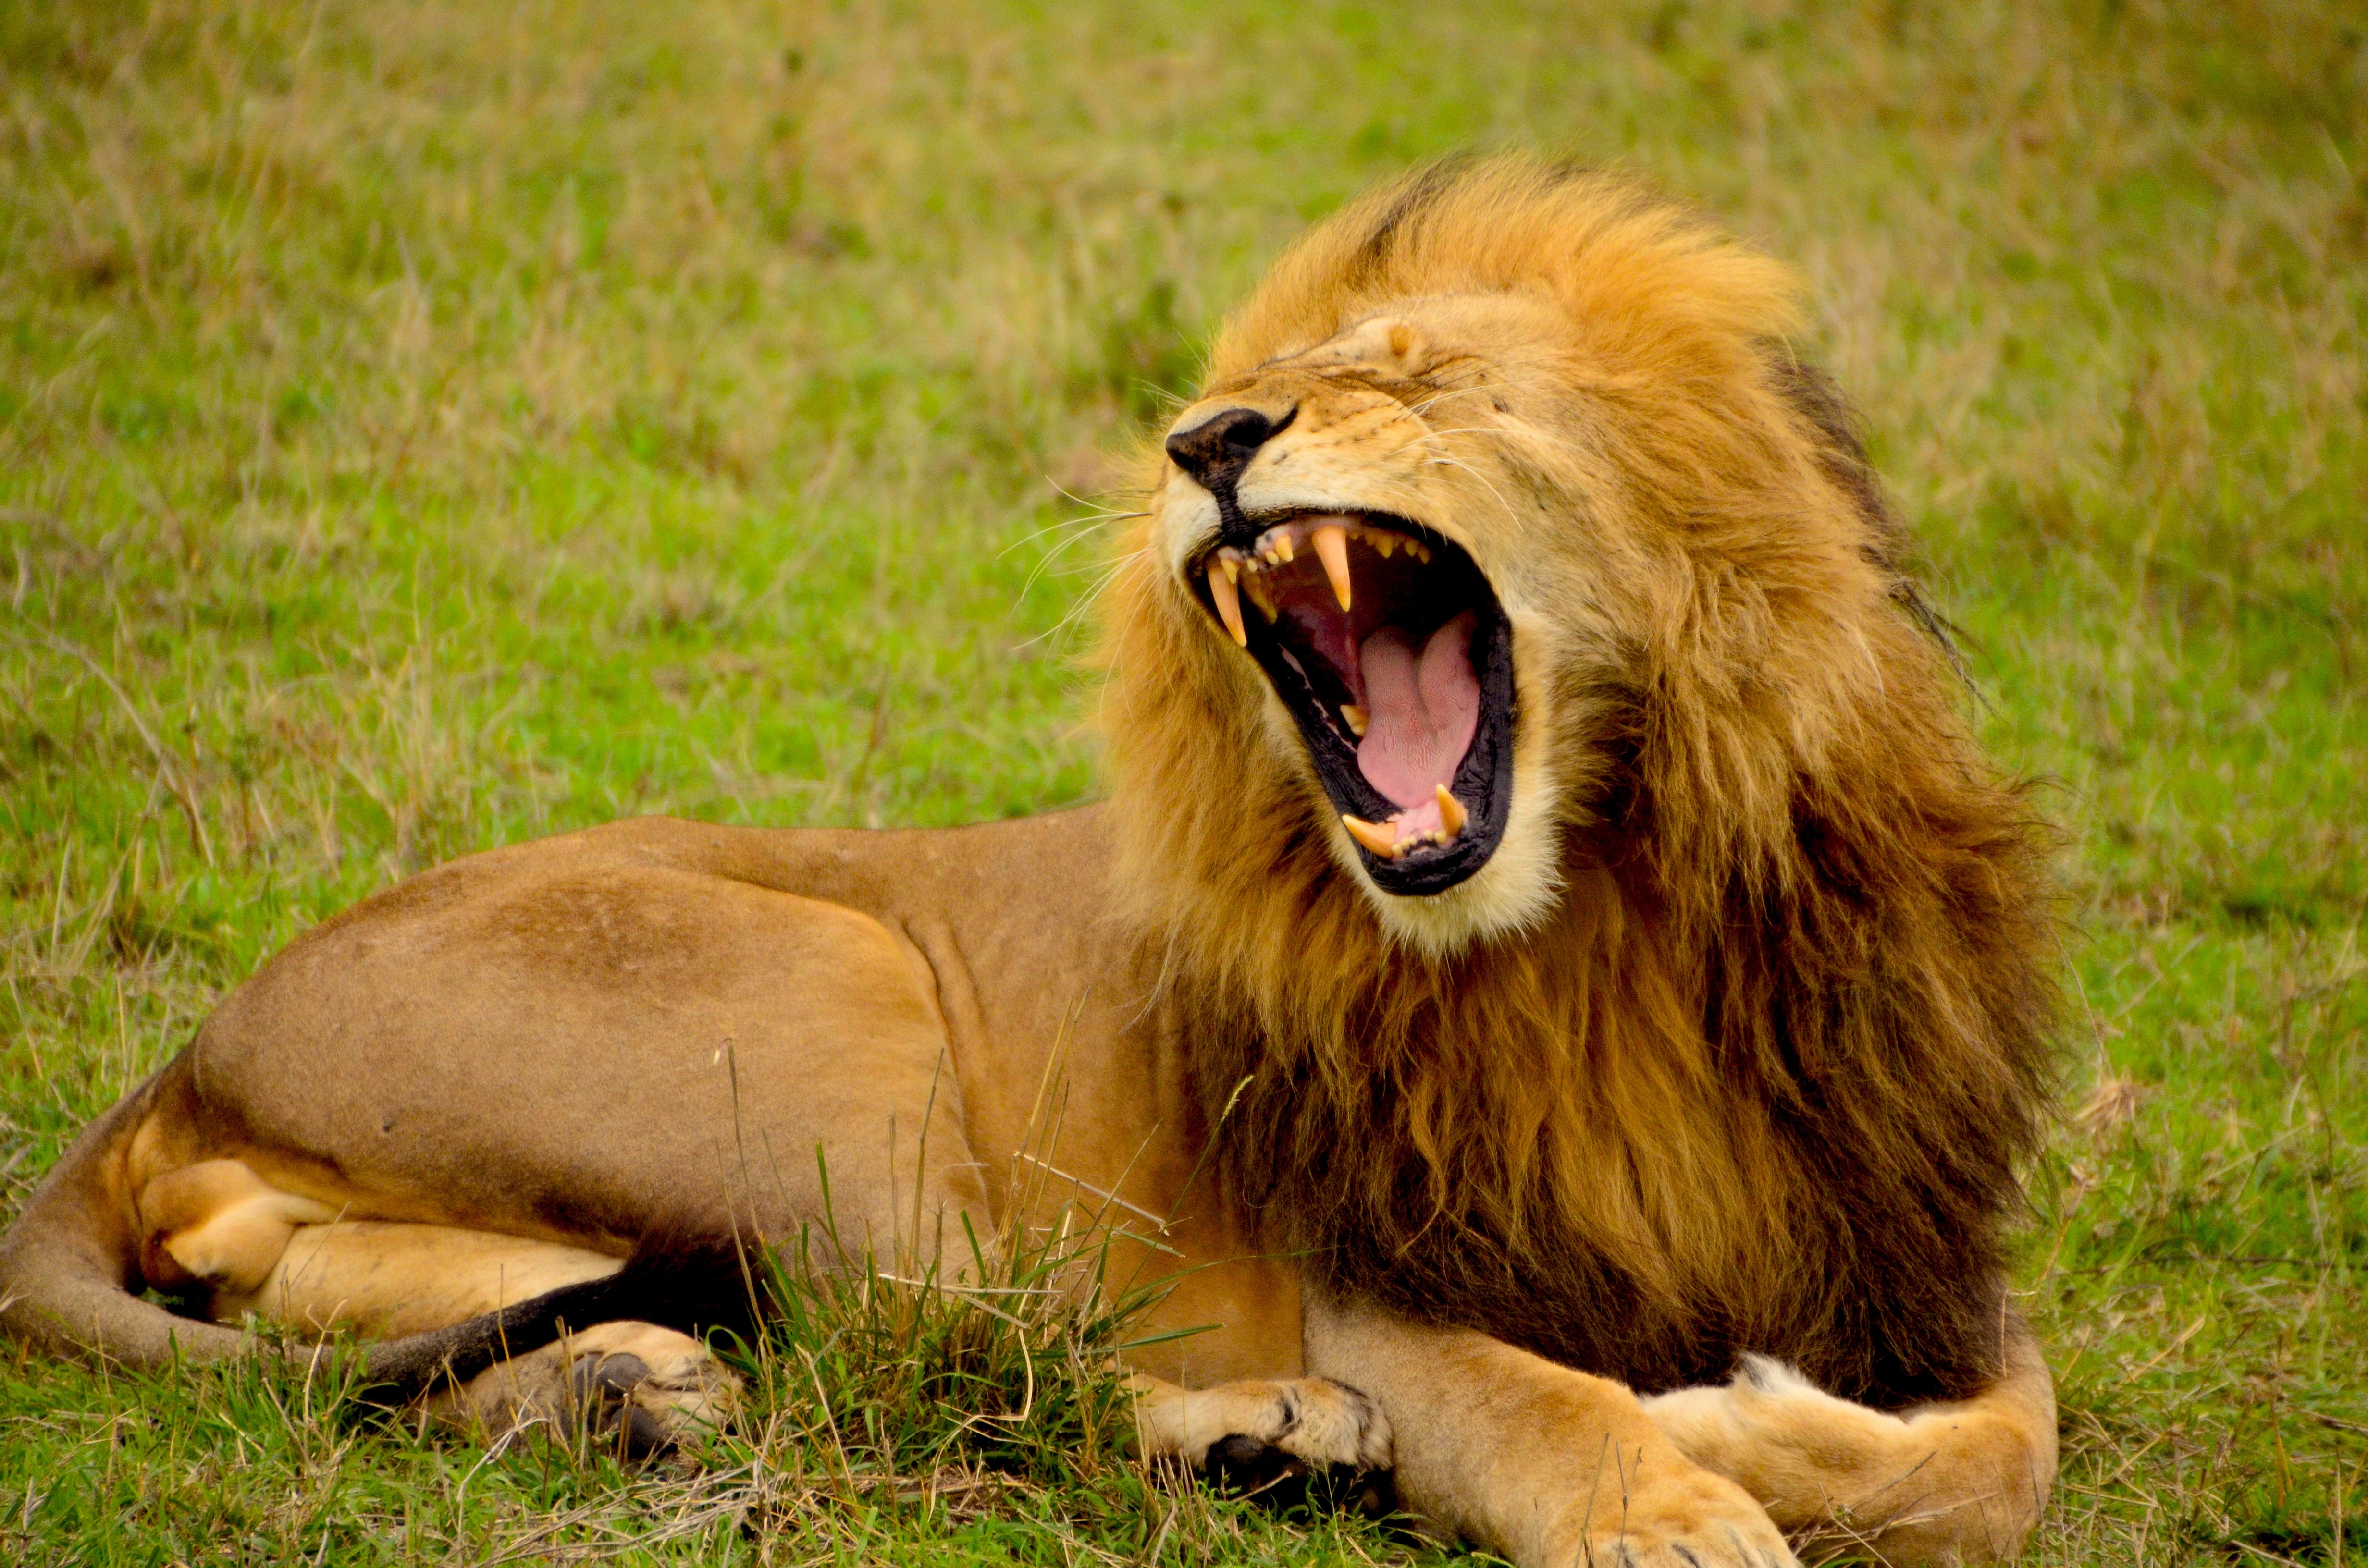 Roar, Deadly, Fierce, King, Lion, HQ Photo